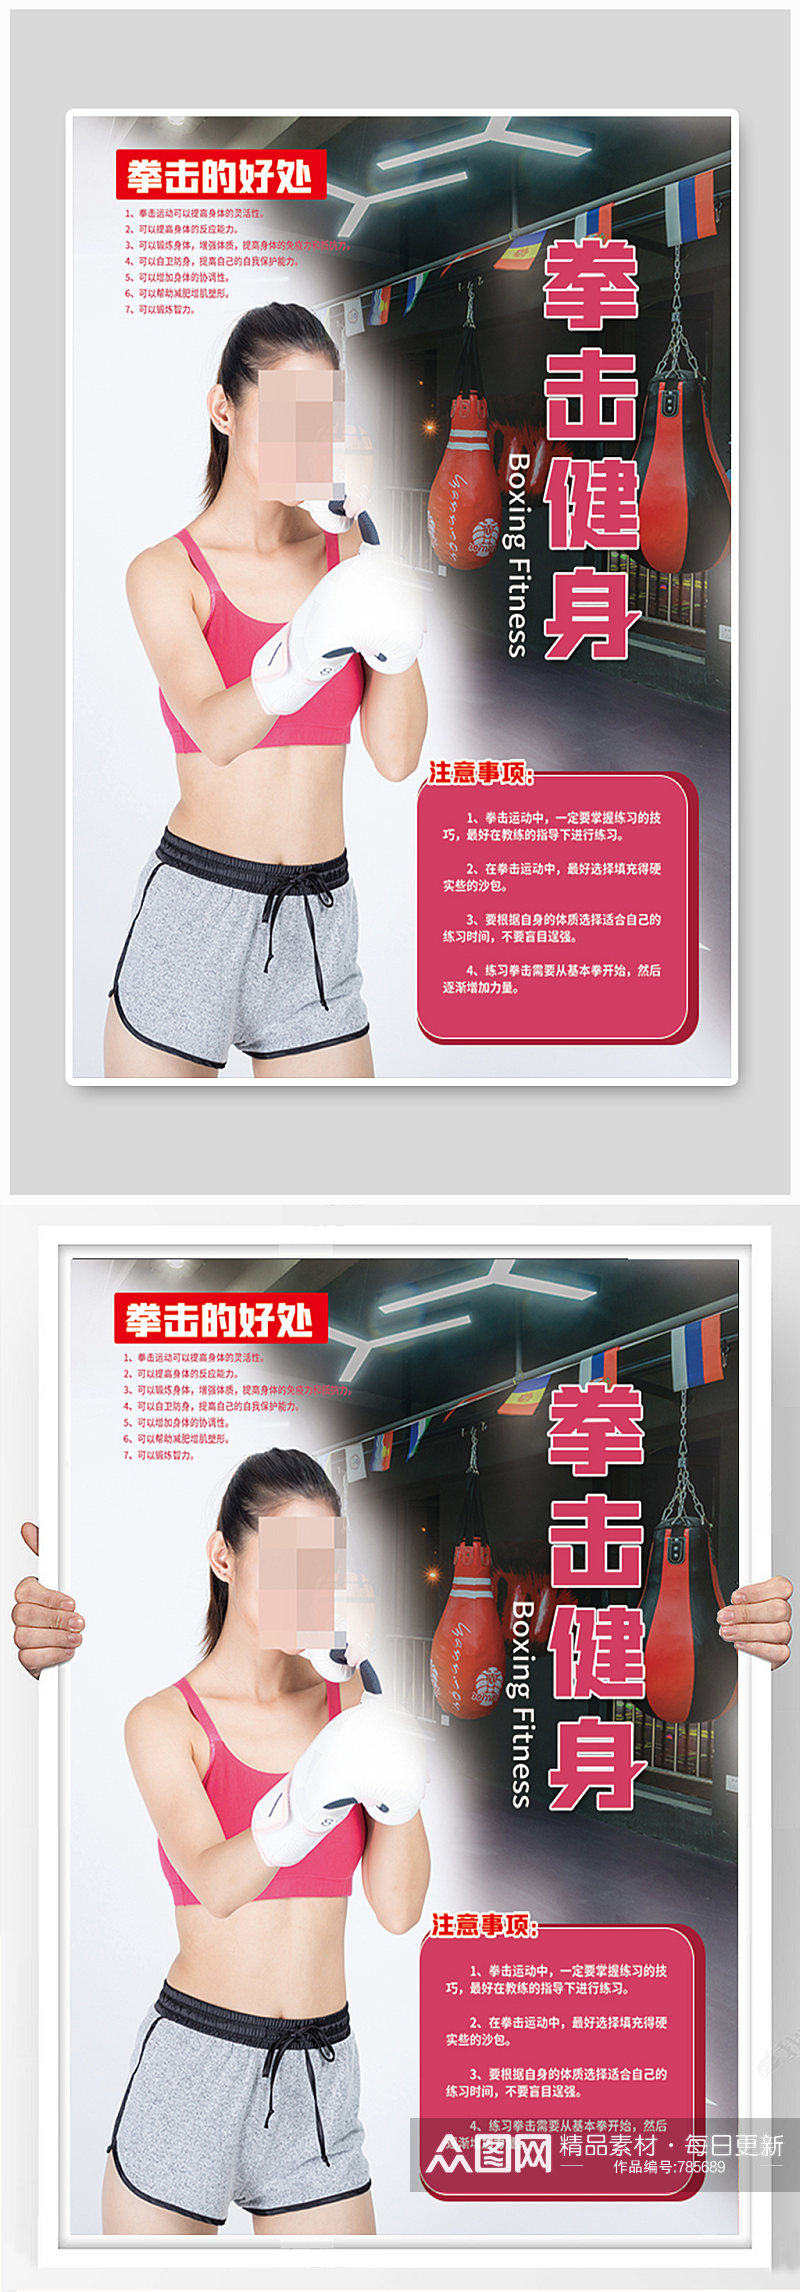 女子拳击健身简约海报素材